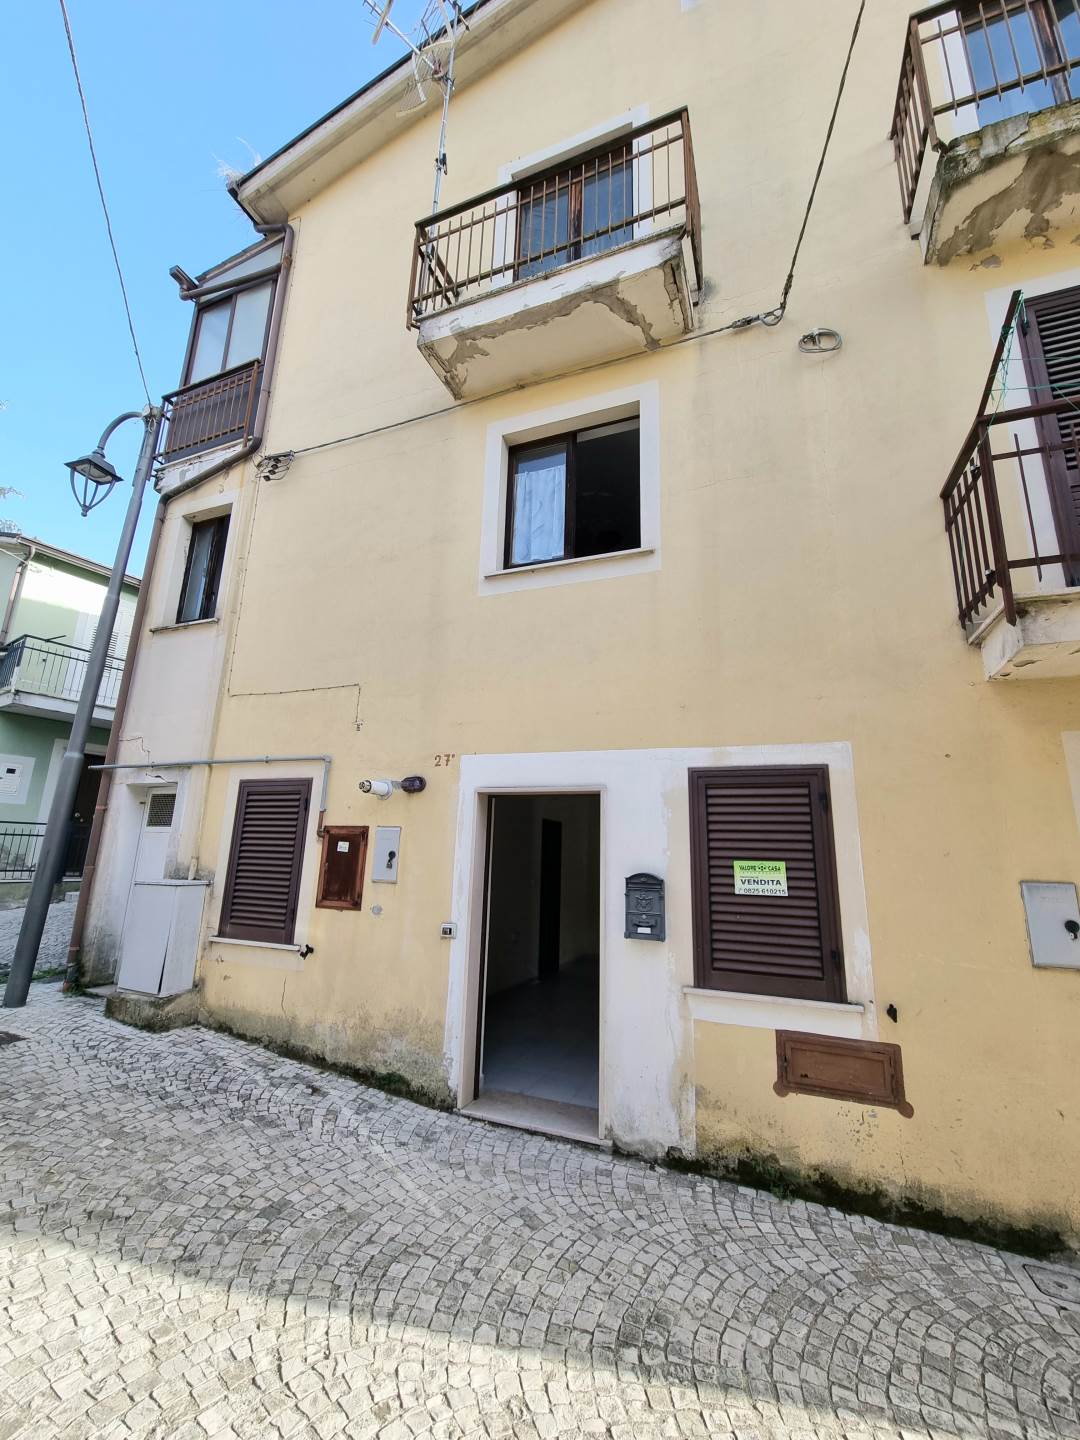 Appartamento in vendita a Tufo, 4 locali, prezzo € 26.000 | PortaleAgenzieImmobiliari.it